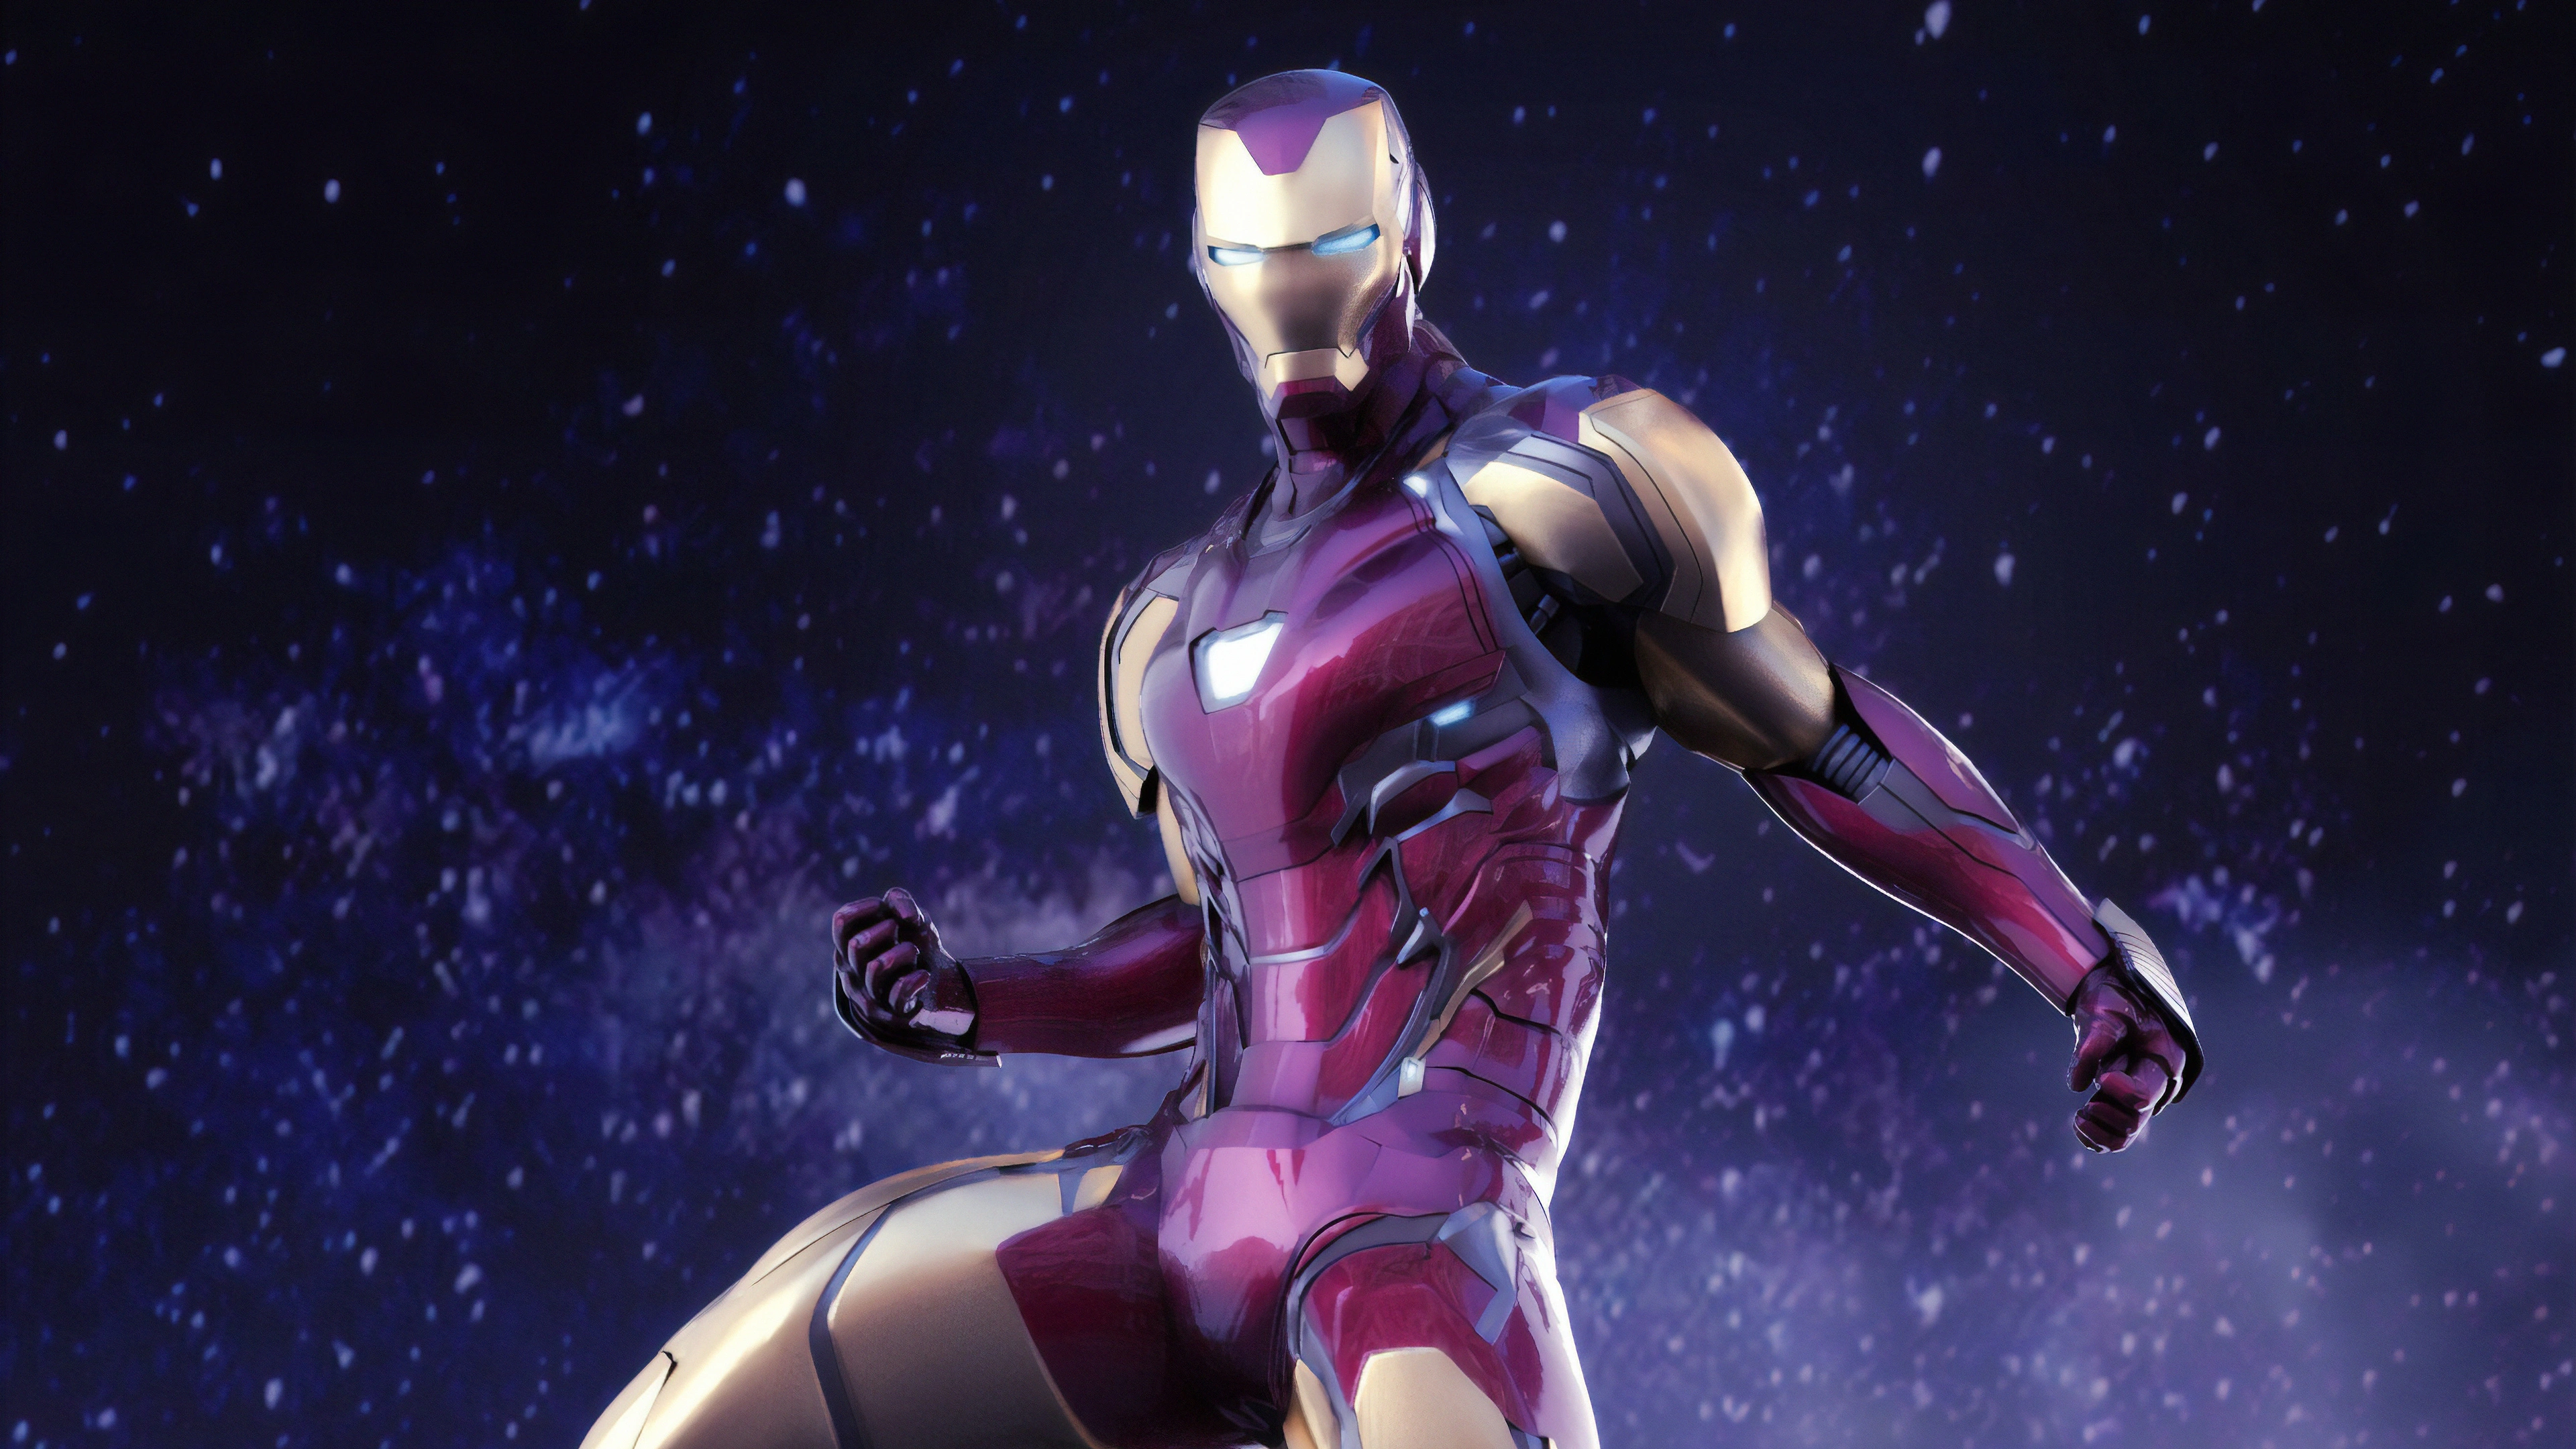 iron man avengers endgame suit 1570393583 - Iron Man Avengers Endgame Suit - superheroes wallpapers, iron man wallpapers, hd-wallpapers, digital art wallpapers, artwork wallpapers, artstation wallpapers, 4k-wallpapers